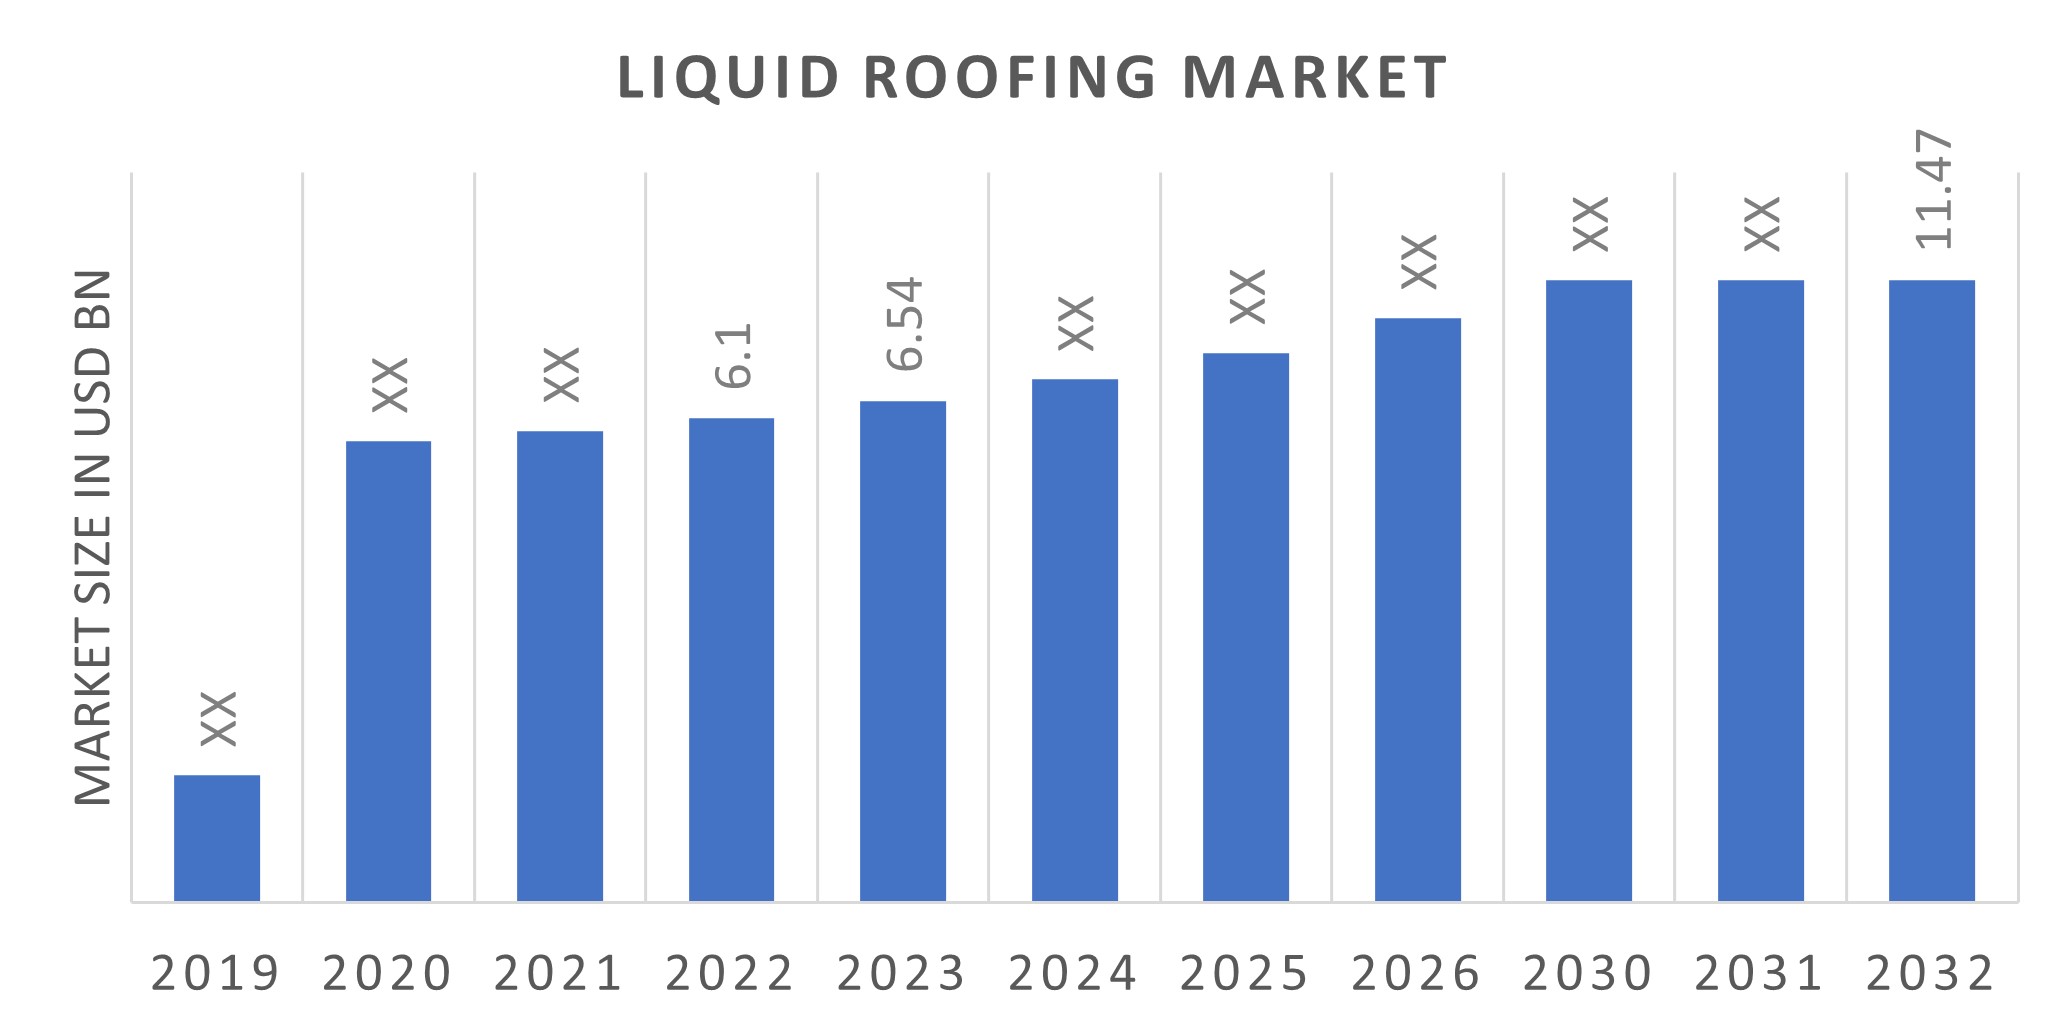 Global Liquid Roofing Market